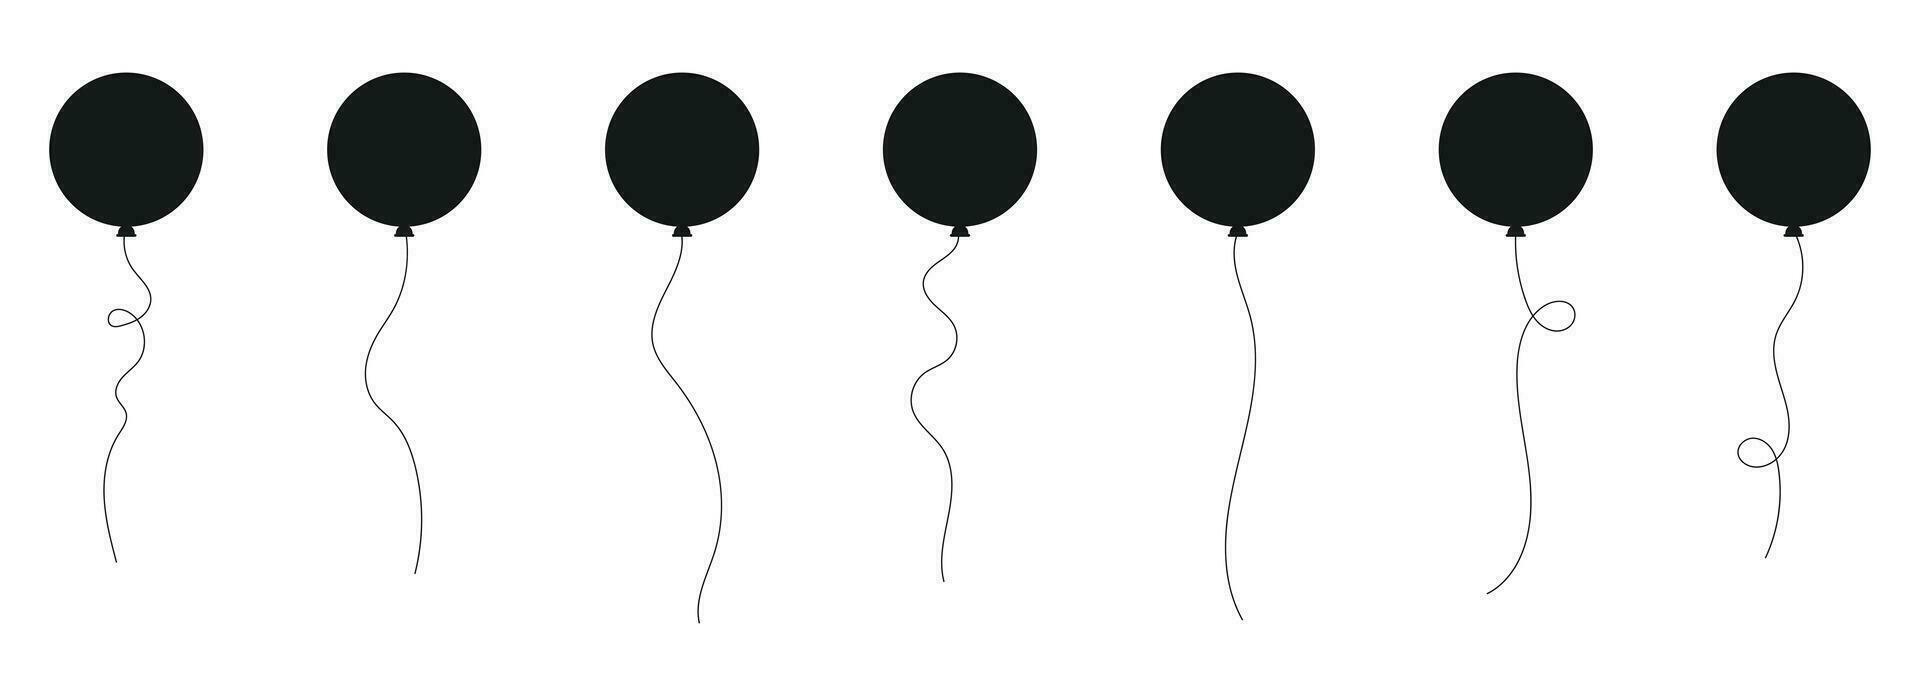 conjunto do Preto silhueta festa balões amarrado com cordas. vetor ilustração dentro desenho animado estilo